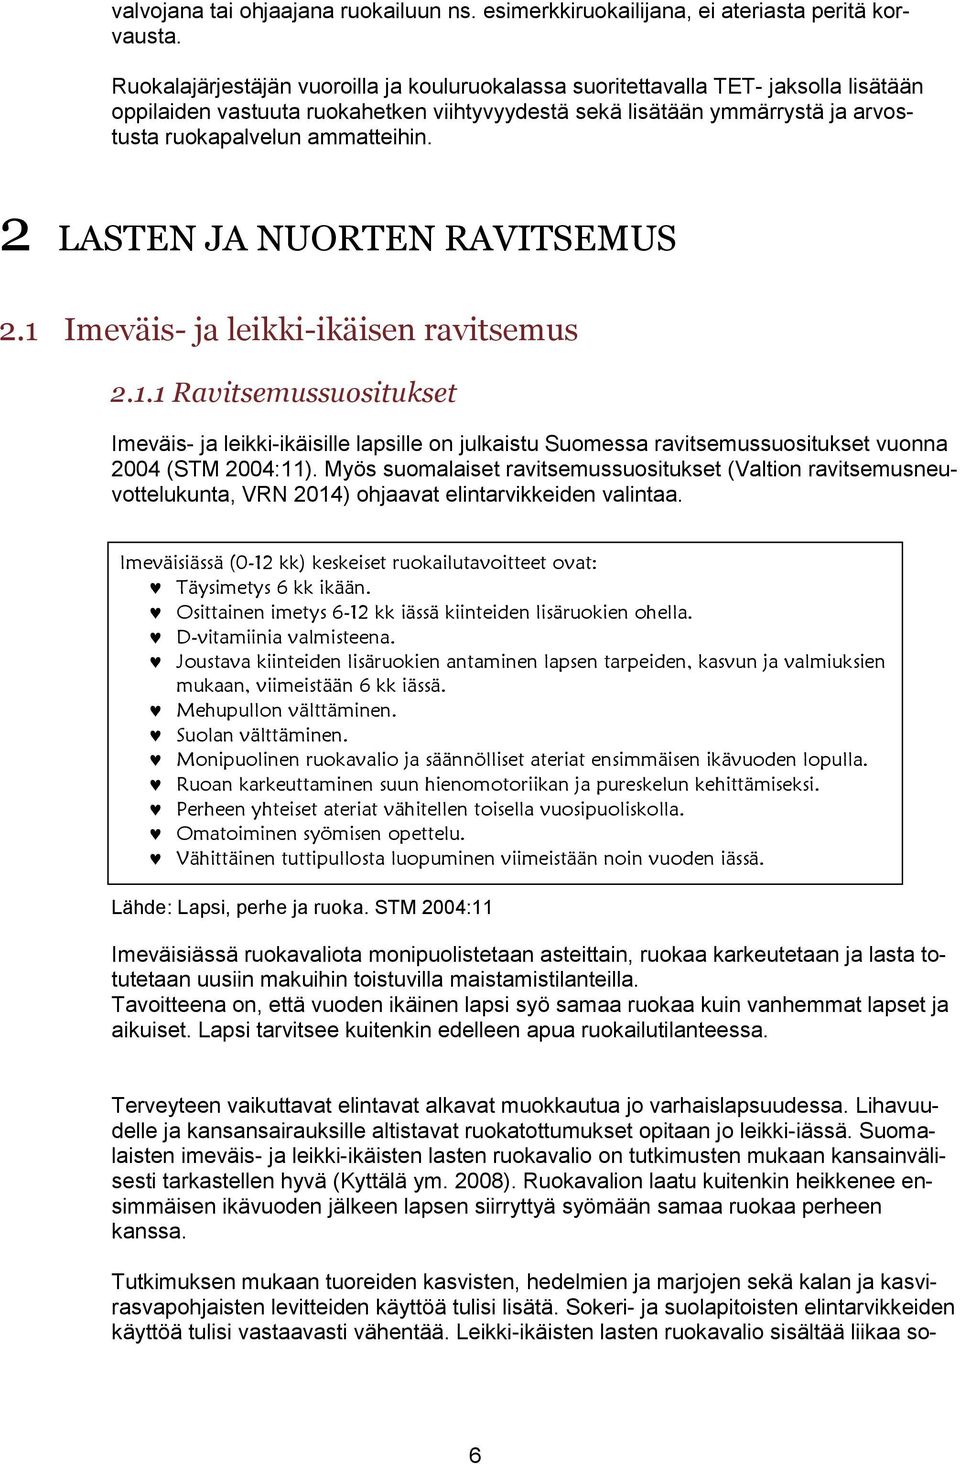 2 LASTEN JA NUORTEN RAVITSEMUS 2.1 Imeväis- ja leikki-ikäisen ravitsemus 2.1.1 Ravitsemussuositukset Imeväis- ja leikki-ikäisille lapsille on julkaistu Suomessa ravitsemussuositukset vuonna 2004 (STM 2004:11).